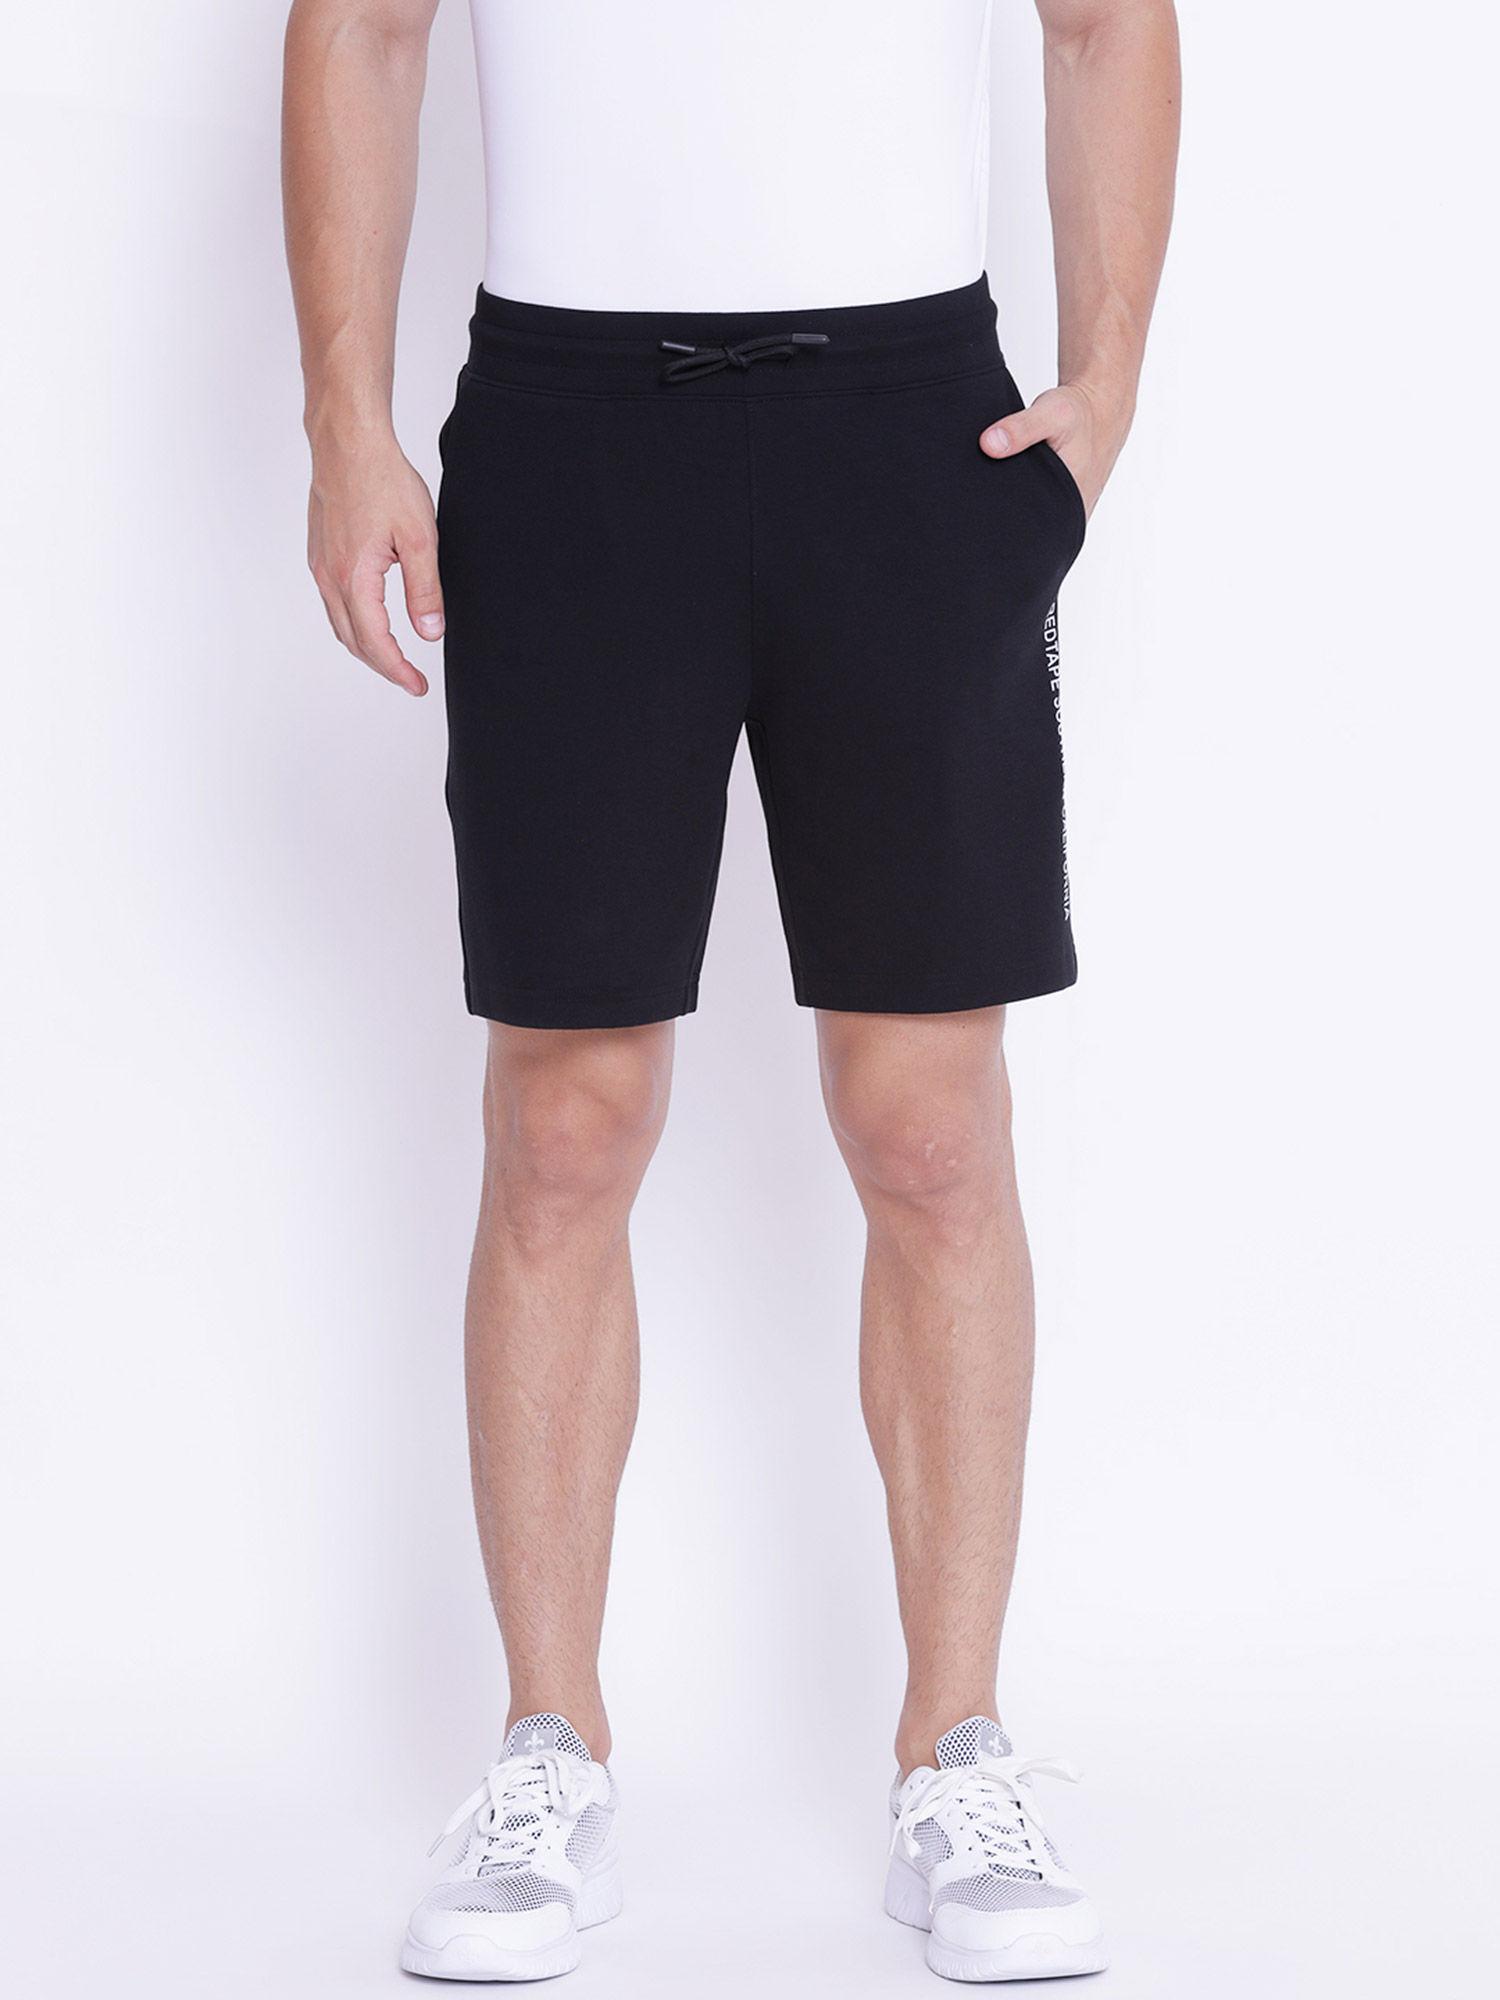 men black active wear shorts